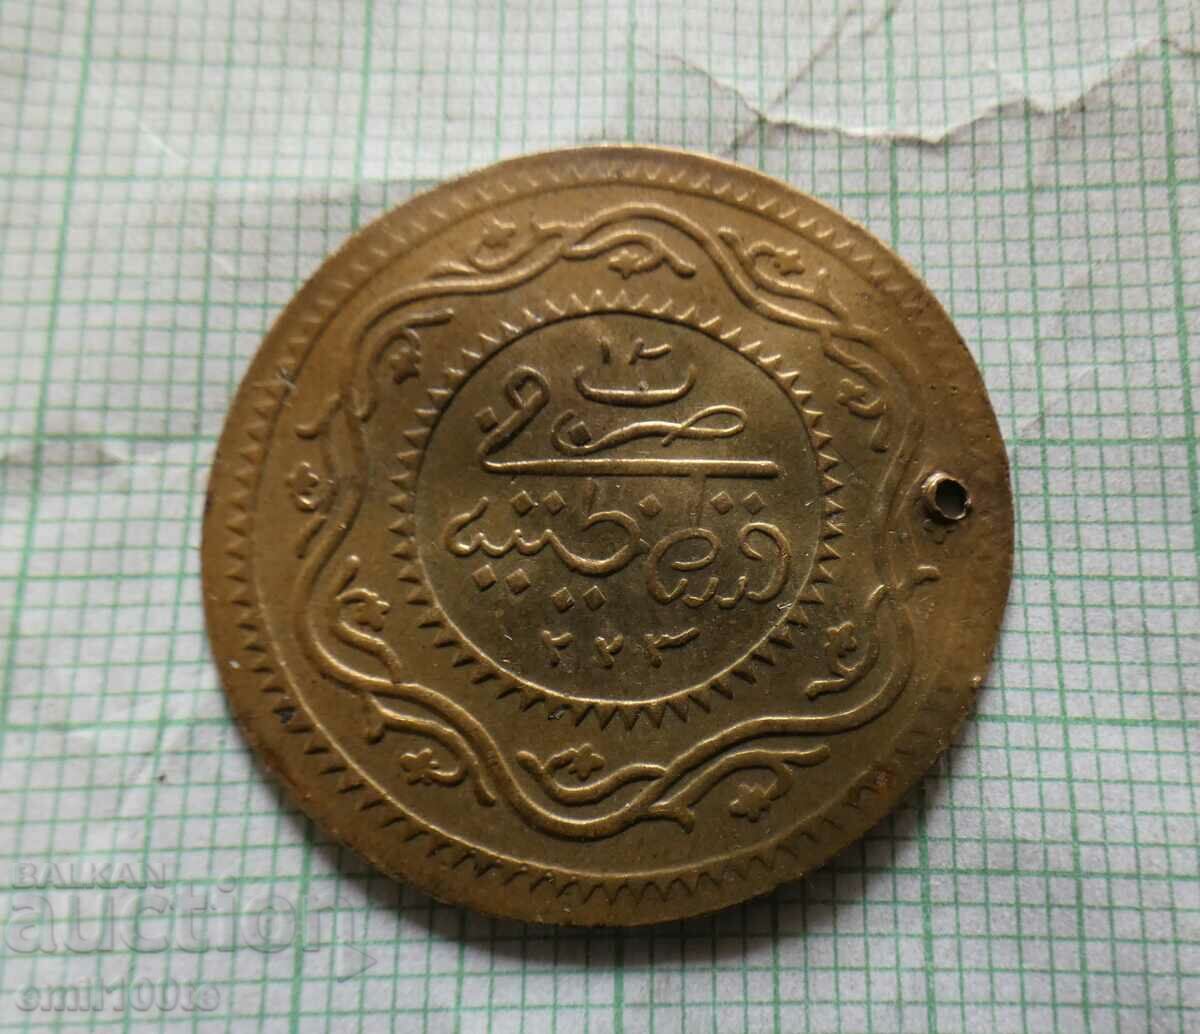 Pendar din alama pentru bijuterii - imitatie a unei monede otomane